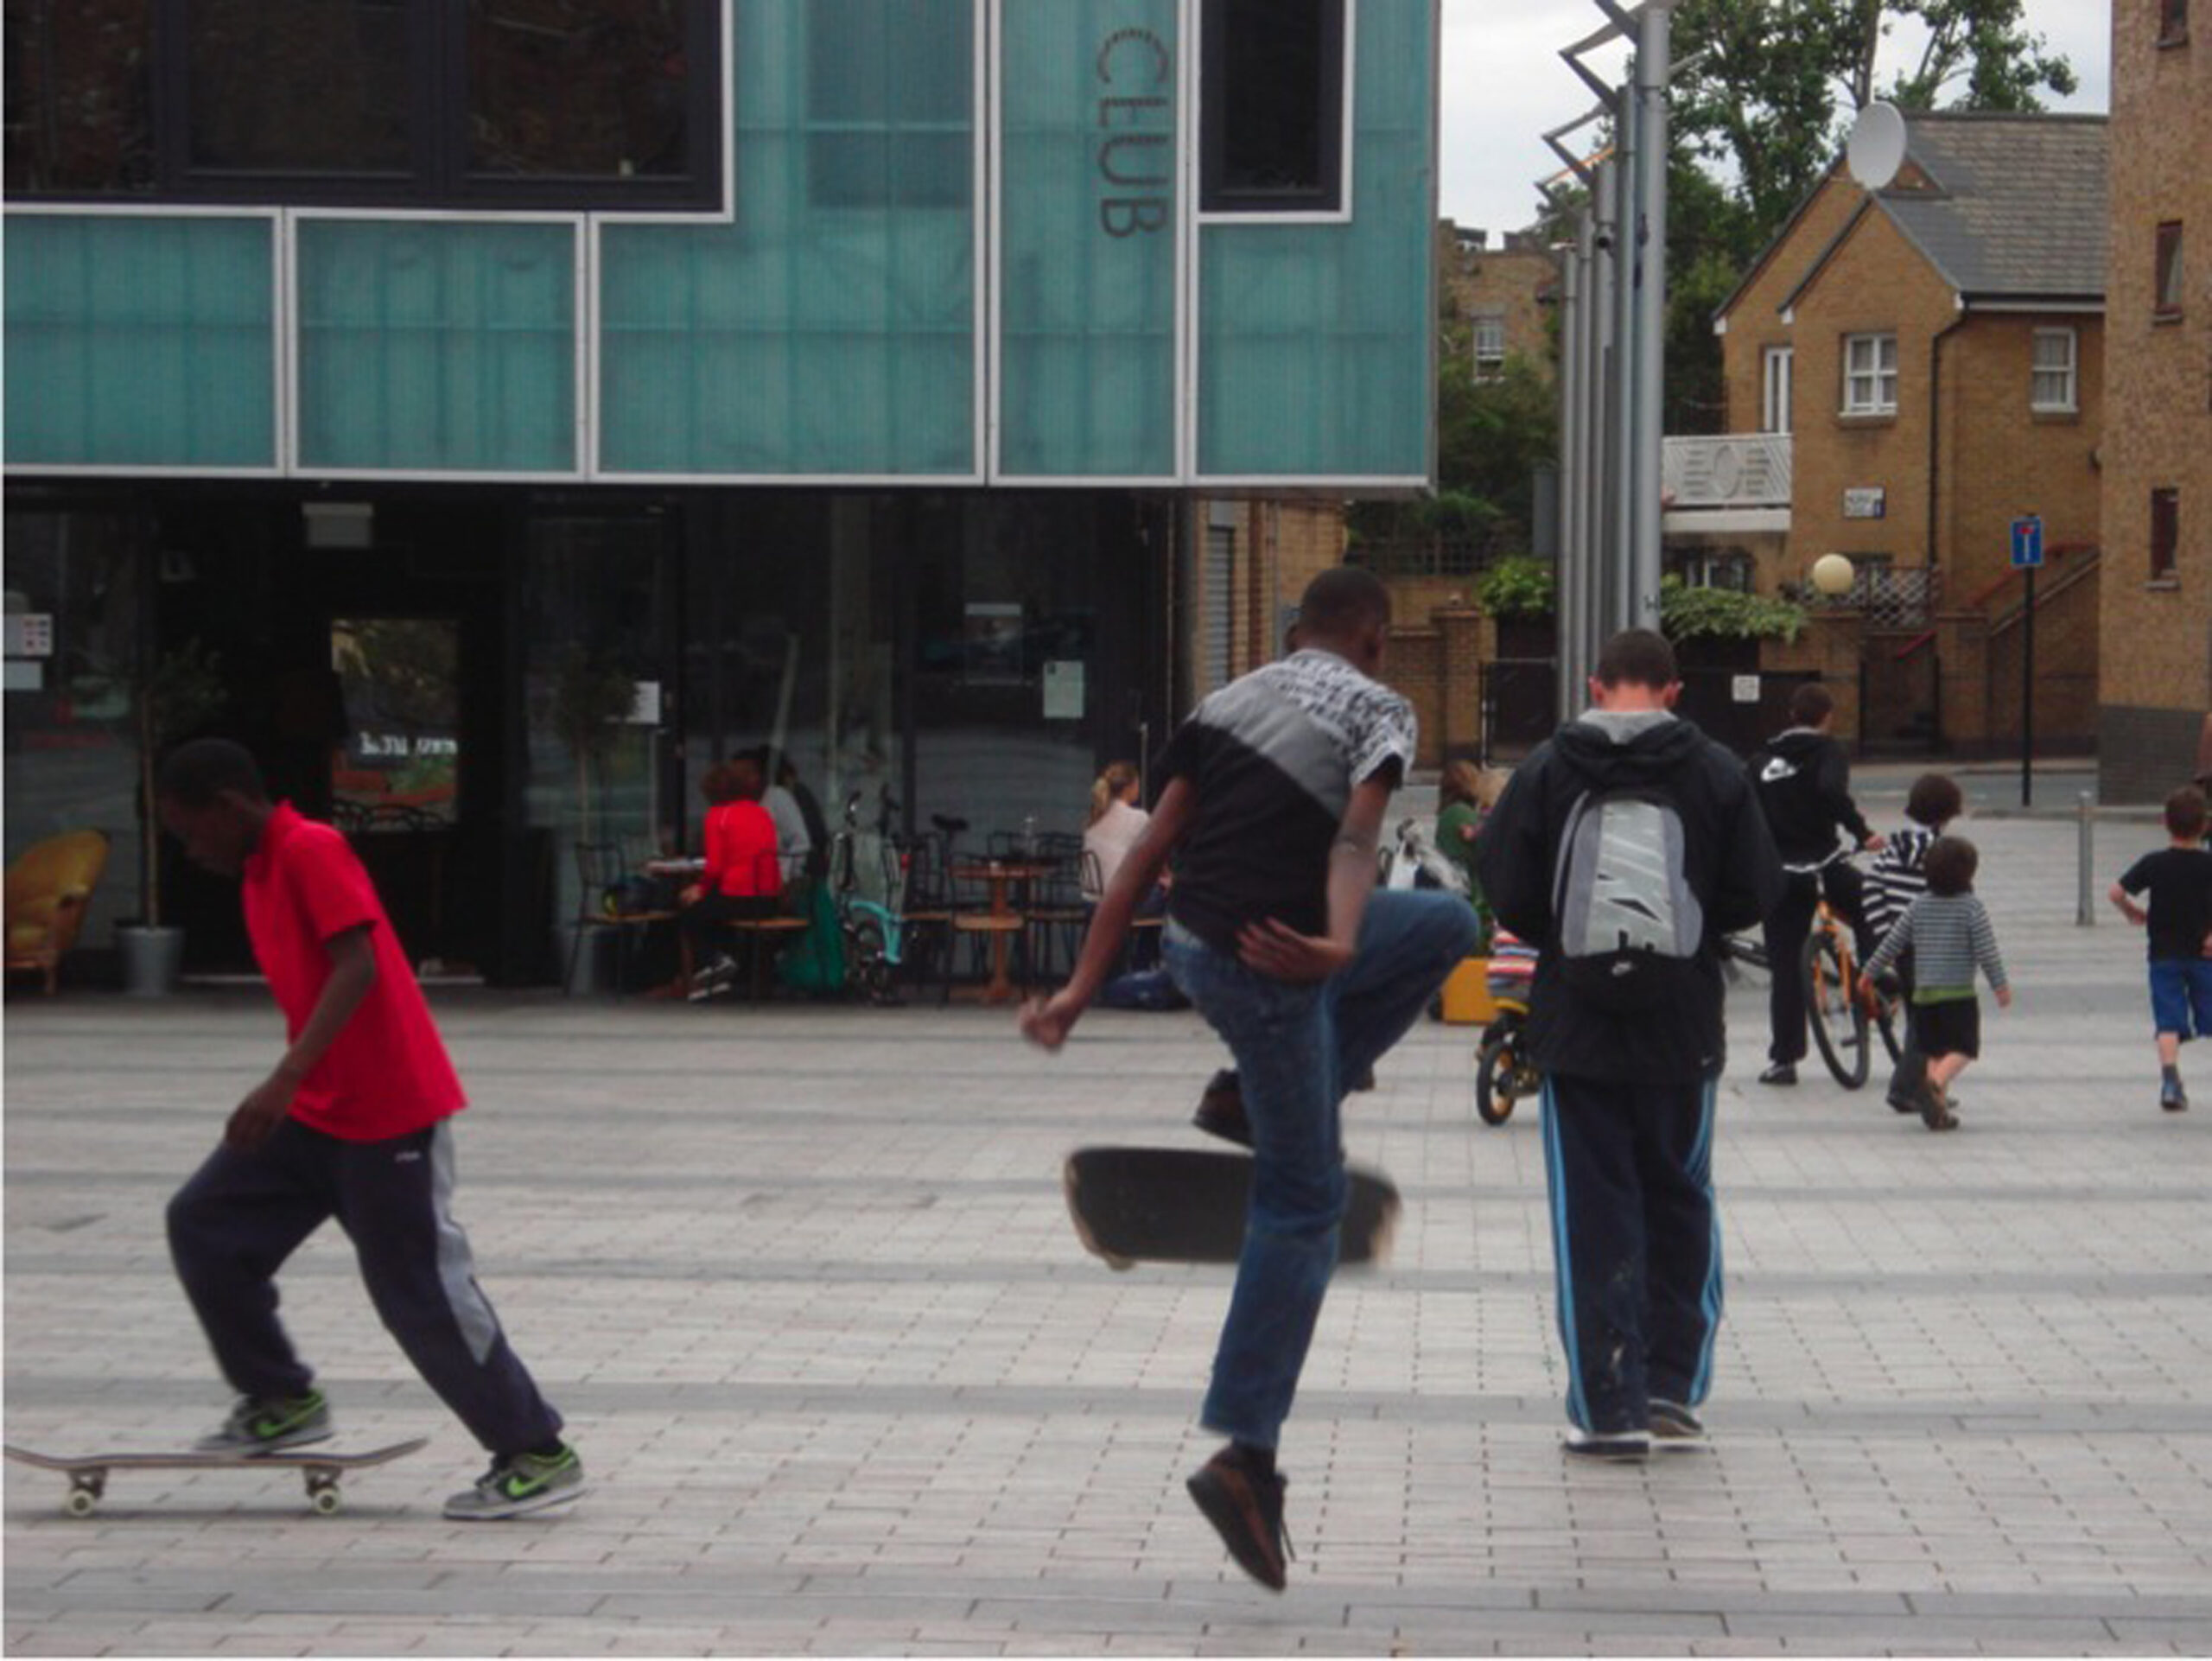 Skateboarders skating in Gillett Square